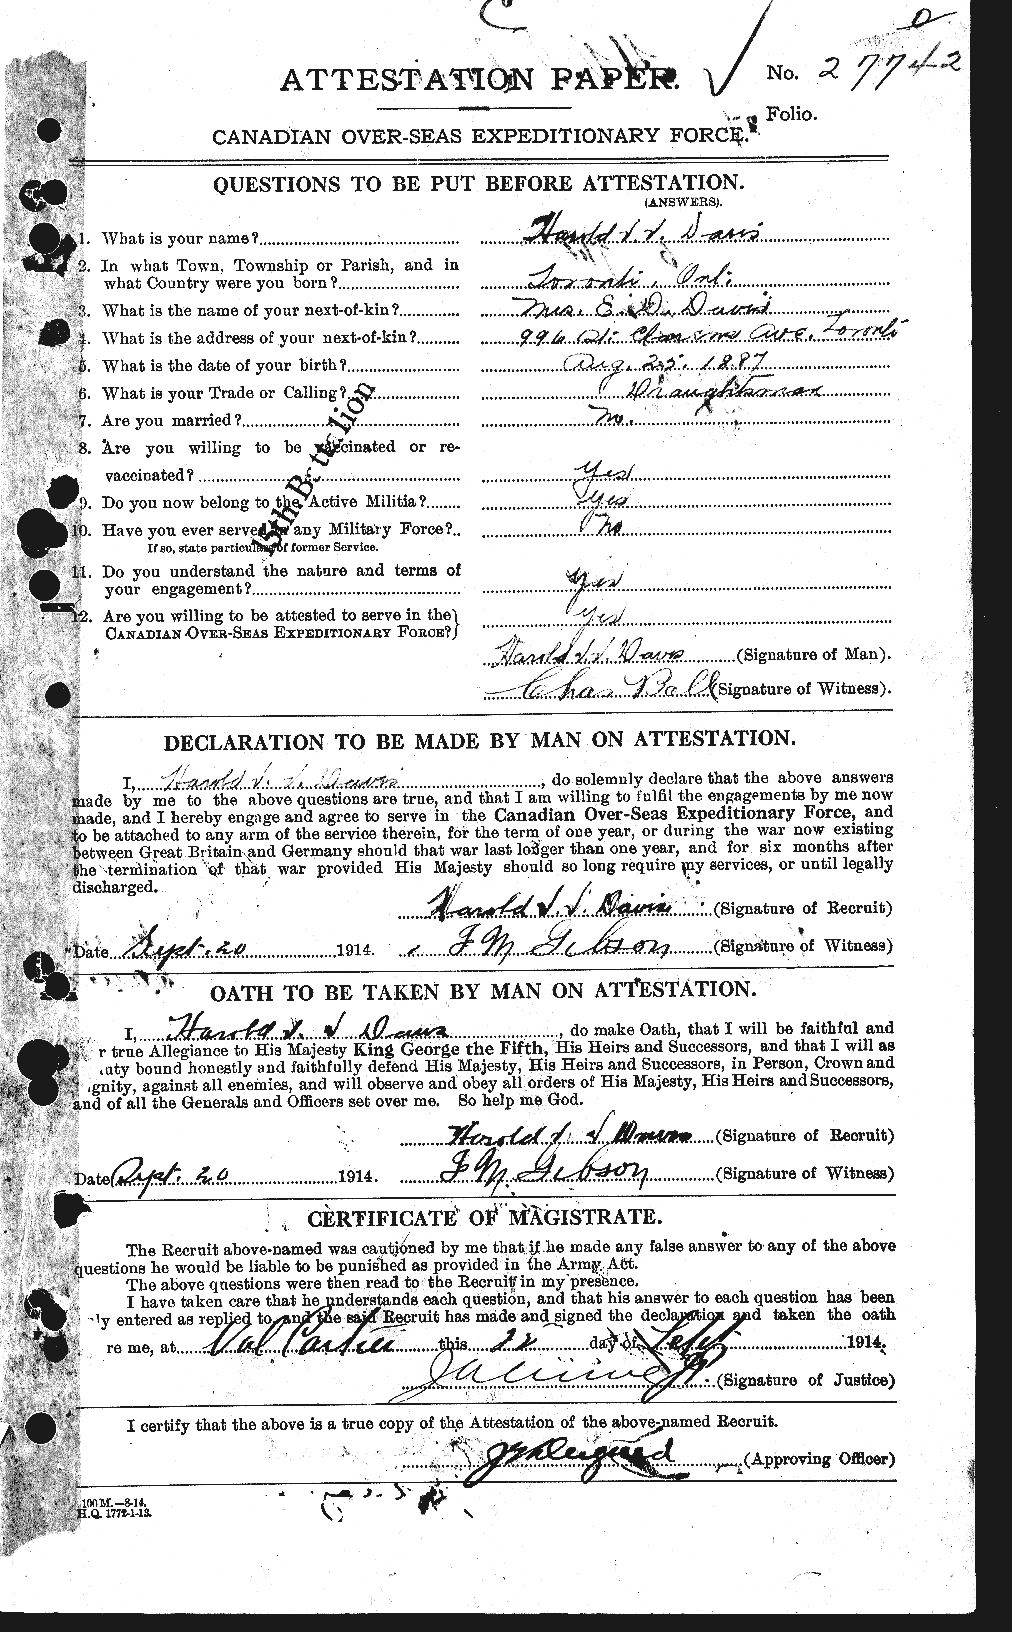 Dossiers du Personnel de la Première Guerre mondiale - CEC 282054a